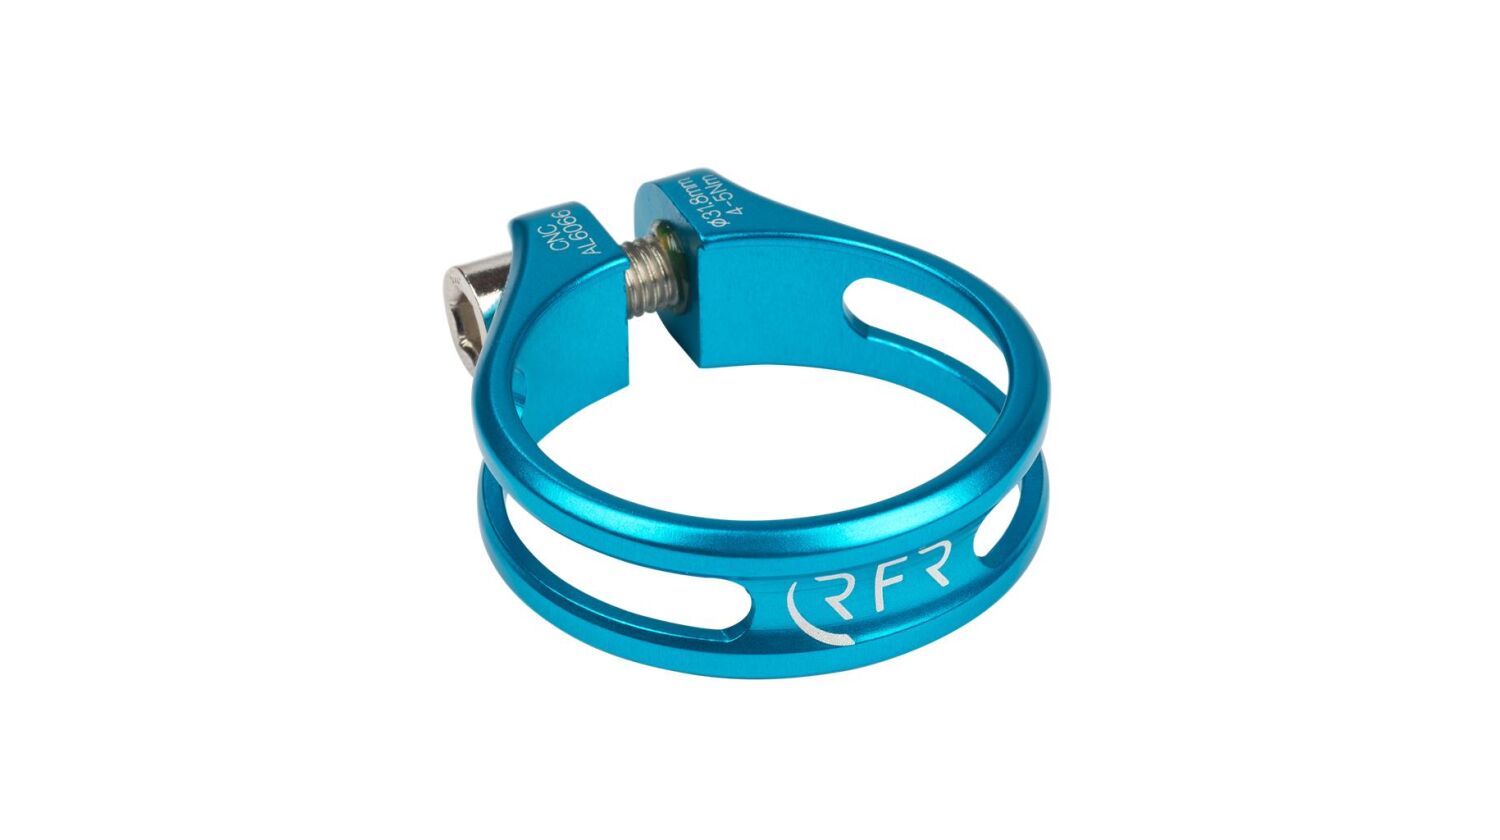 RFR Sattelklemme 31,8 mm Ultralight blue